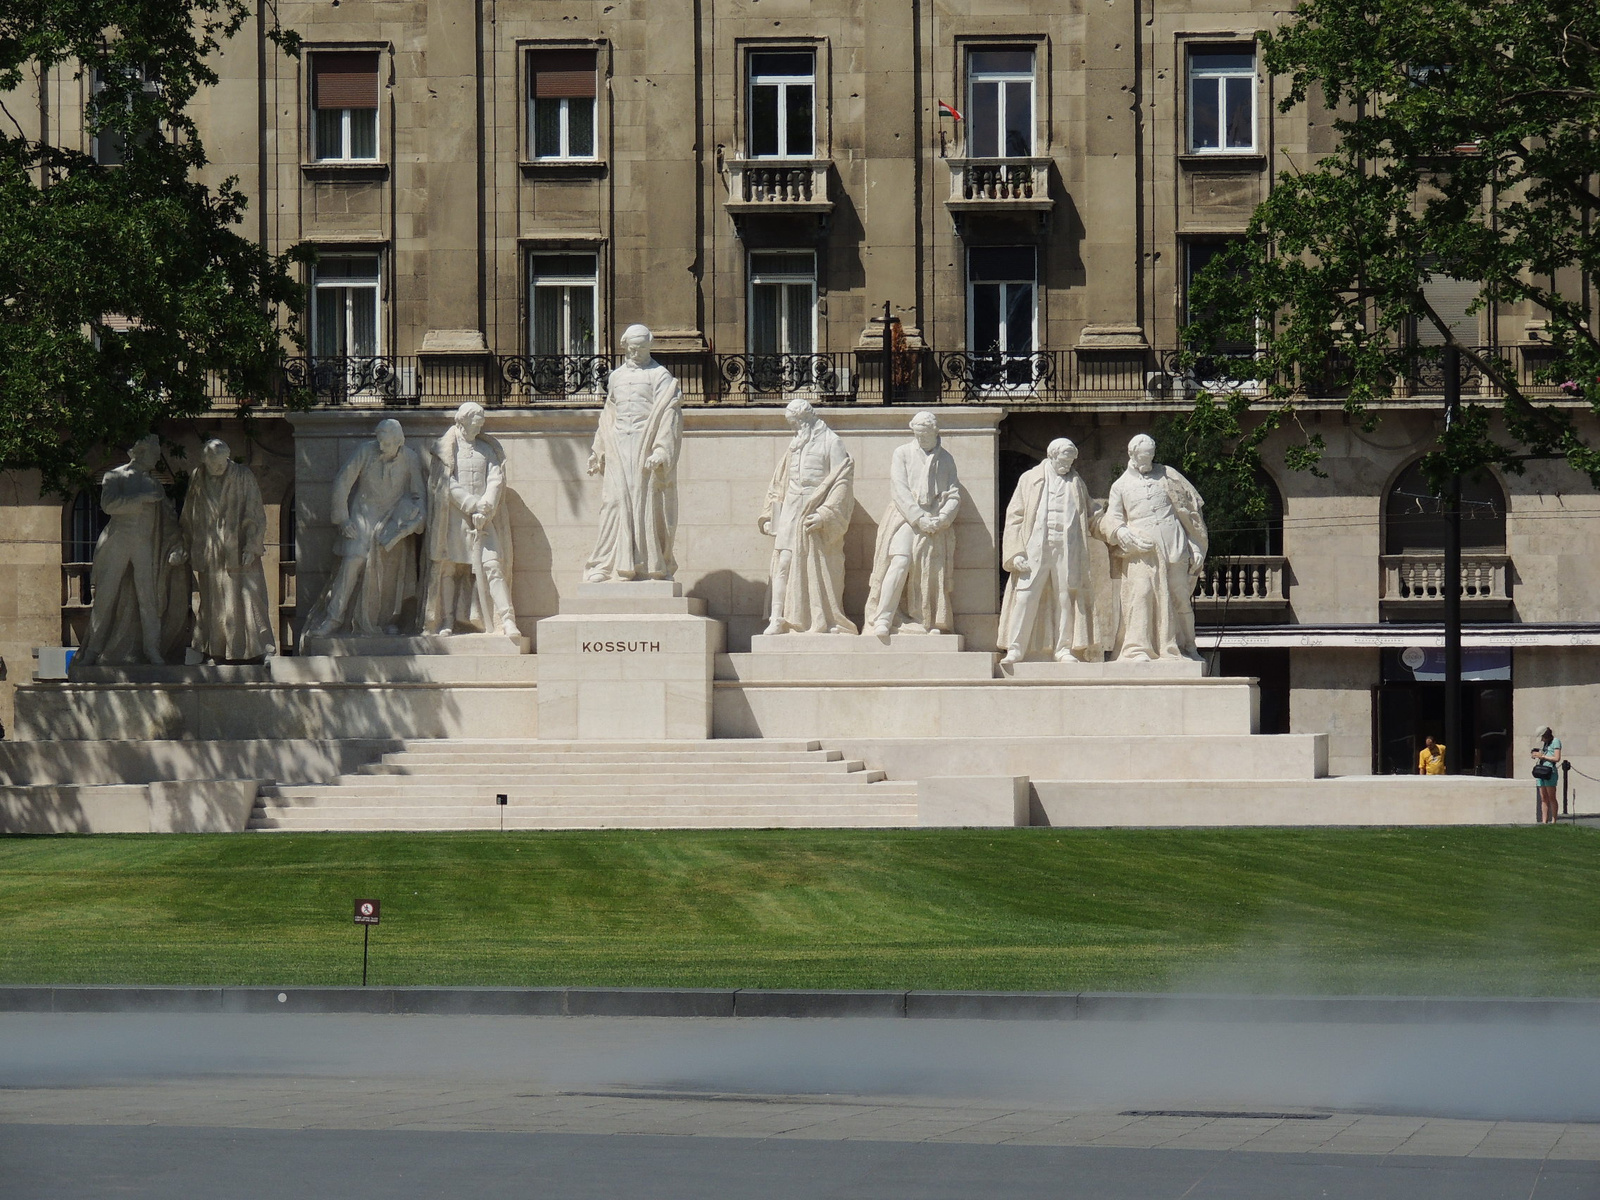 2015-06-30 022 Kossuth tér Kossuth kormány szoborcsoportja